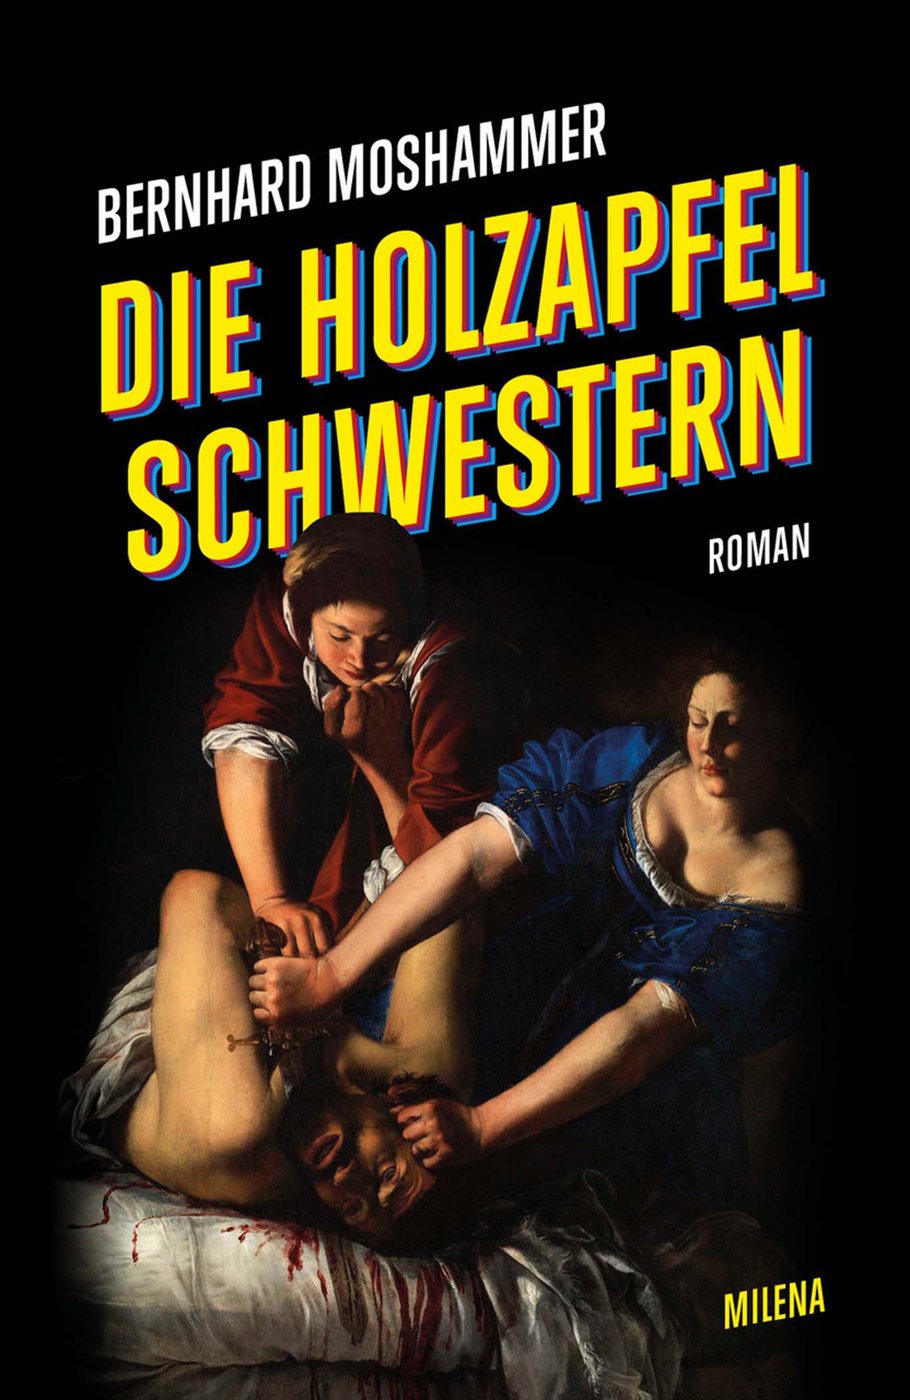 Cover des Romans „Die Holzapfel Schwestern“ von Bernhard Moshammer mit einer Reproduktion von Artemisia Gentileschis Gemälde „Judith enthauptet Holofernes“ (um 1612).